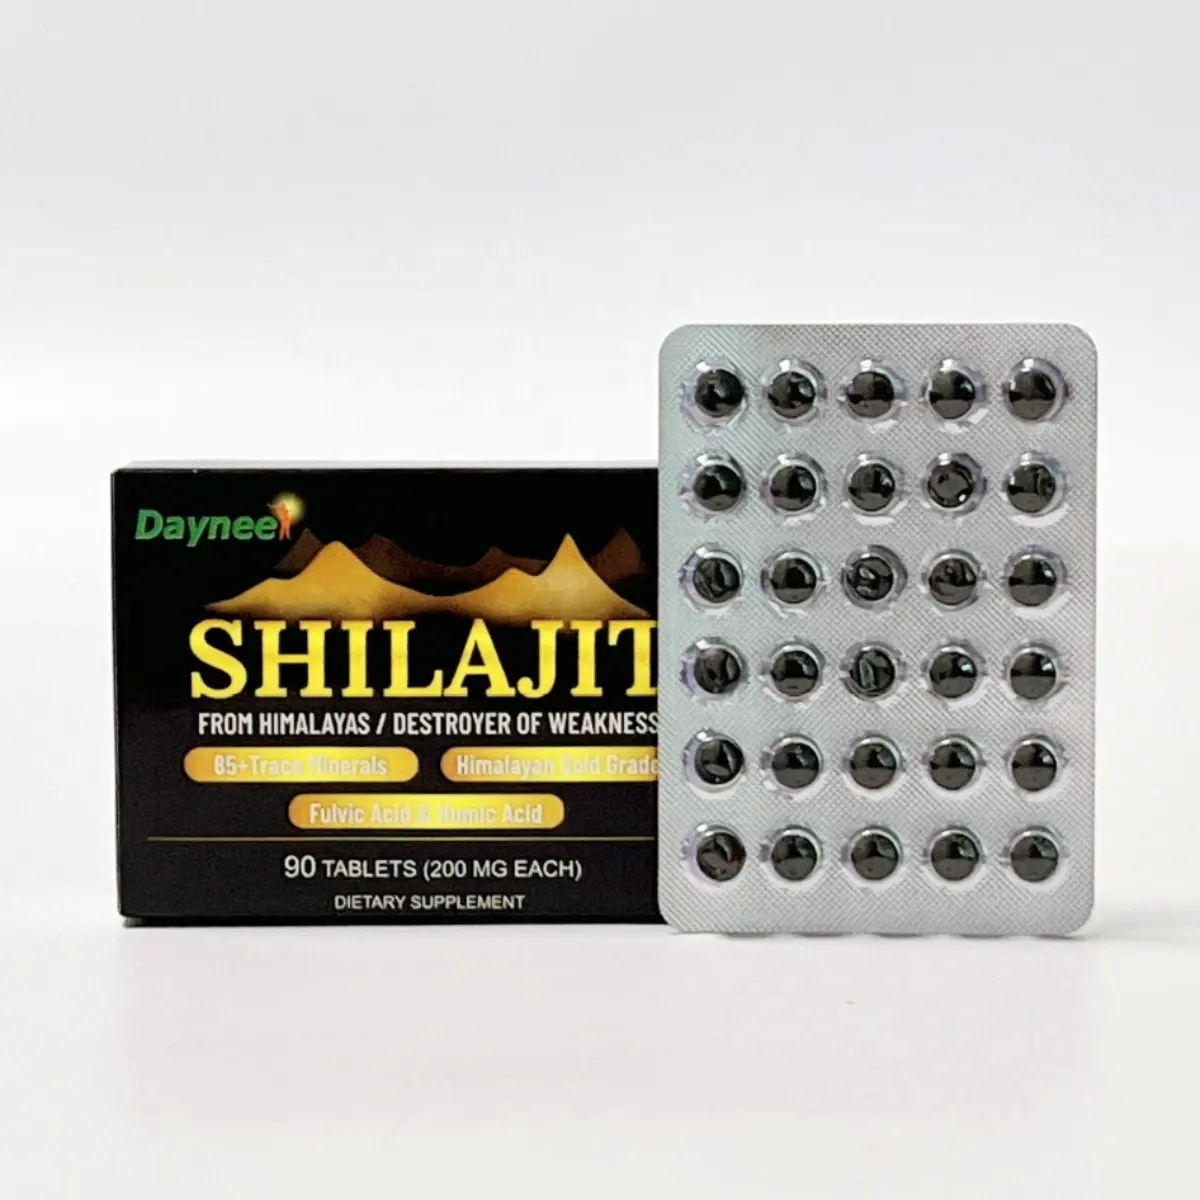 Tabletas puras de Shilajit, 90 unidades, resina original de Shilajit del Himalaya, rica en ácido fúlvico y más de 85 minerales para el sistema inmunológico